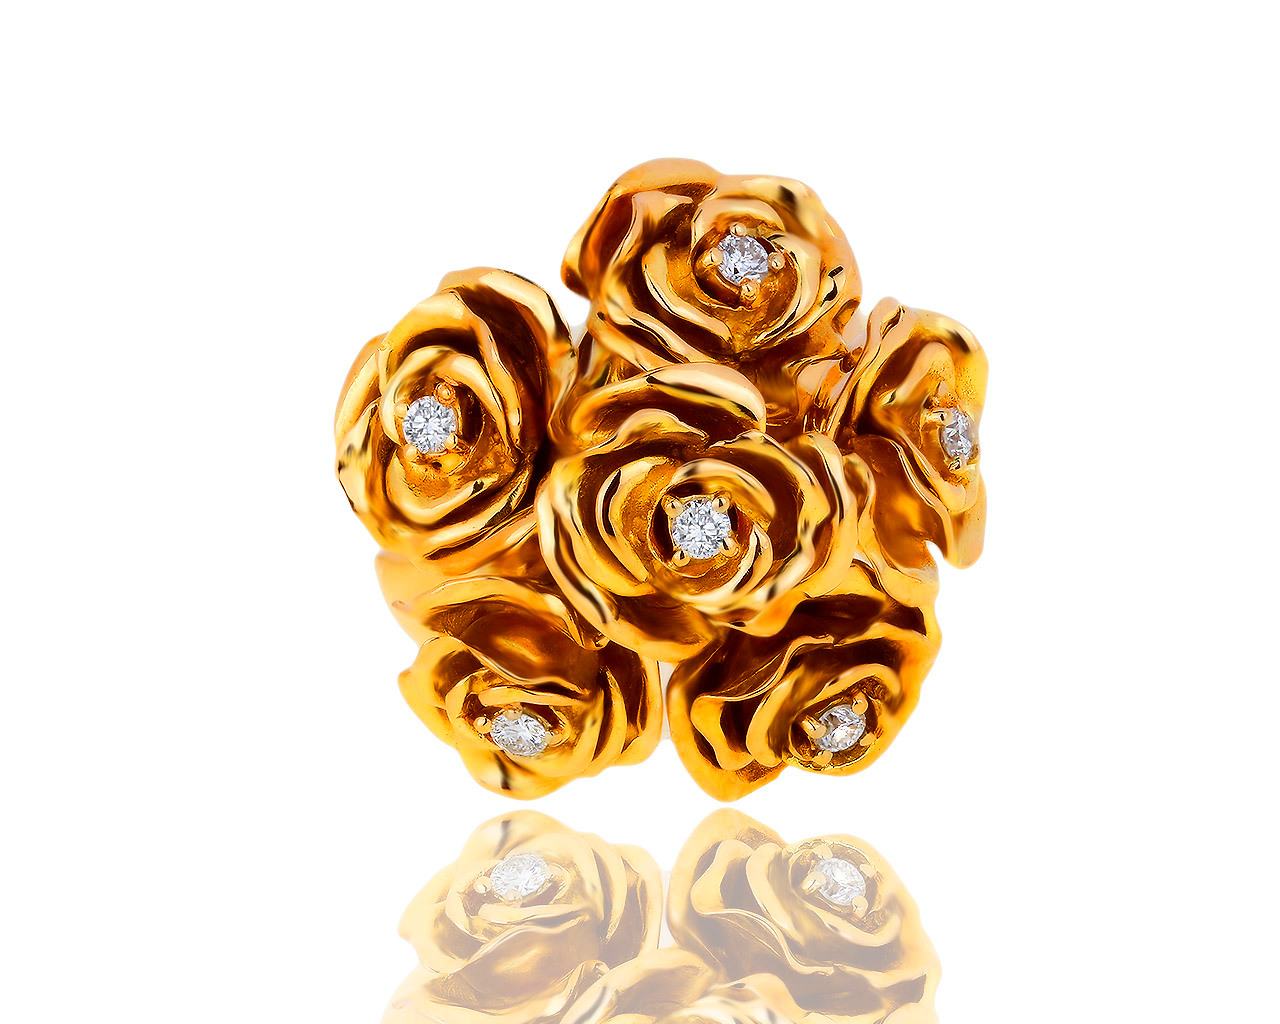 Оригинальное золотое кольцо с бриллиантами 0.30ct Fani